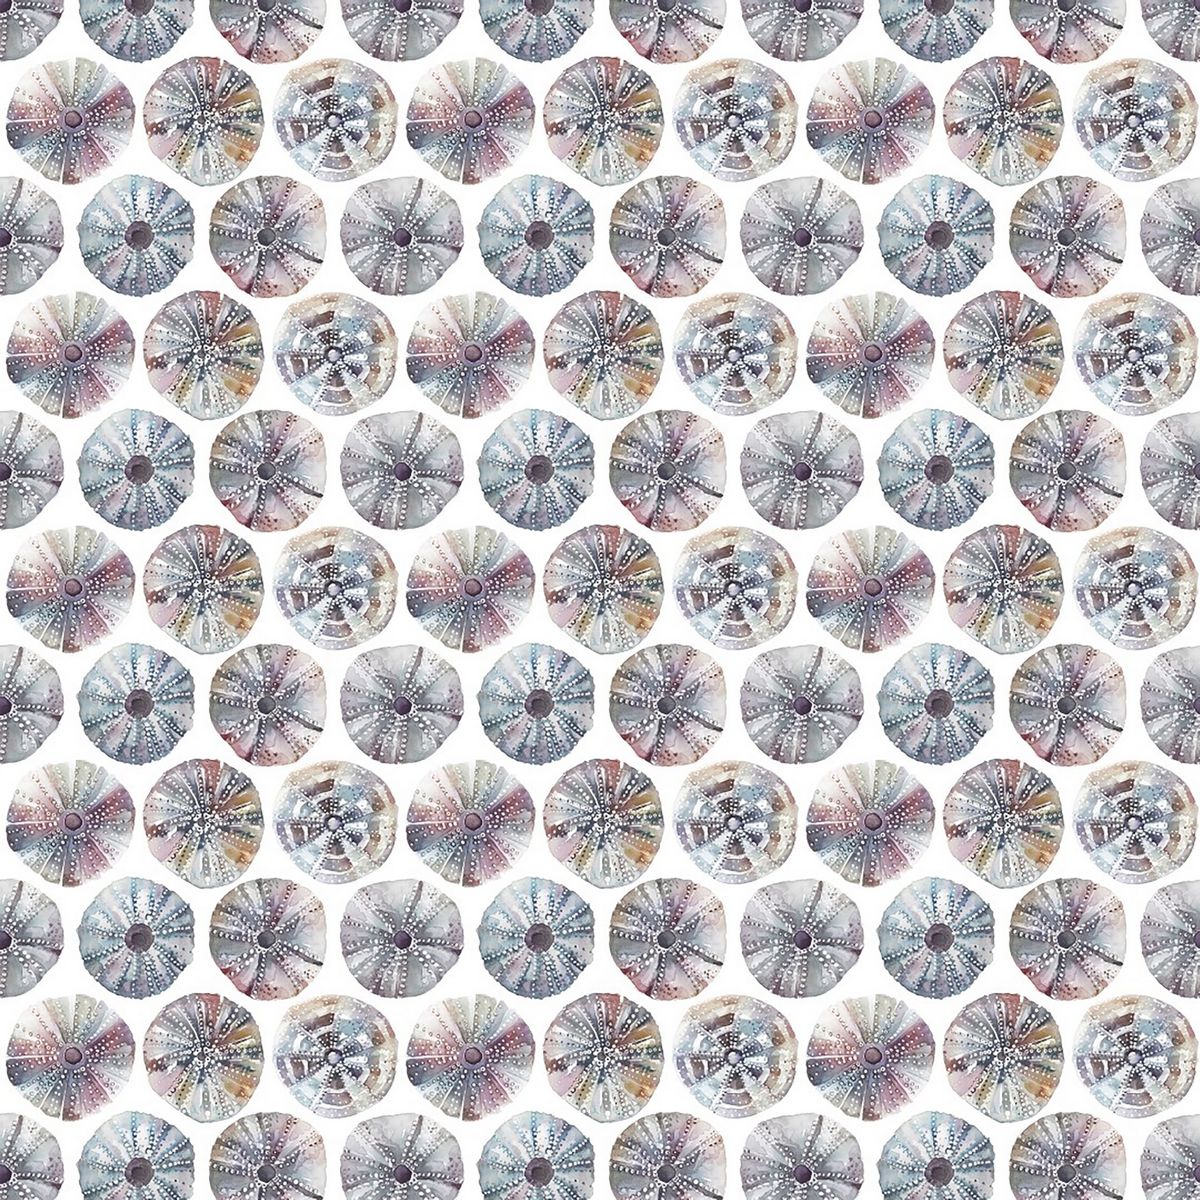 Sea Urchin Abalone Fabric by Voyage Maison